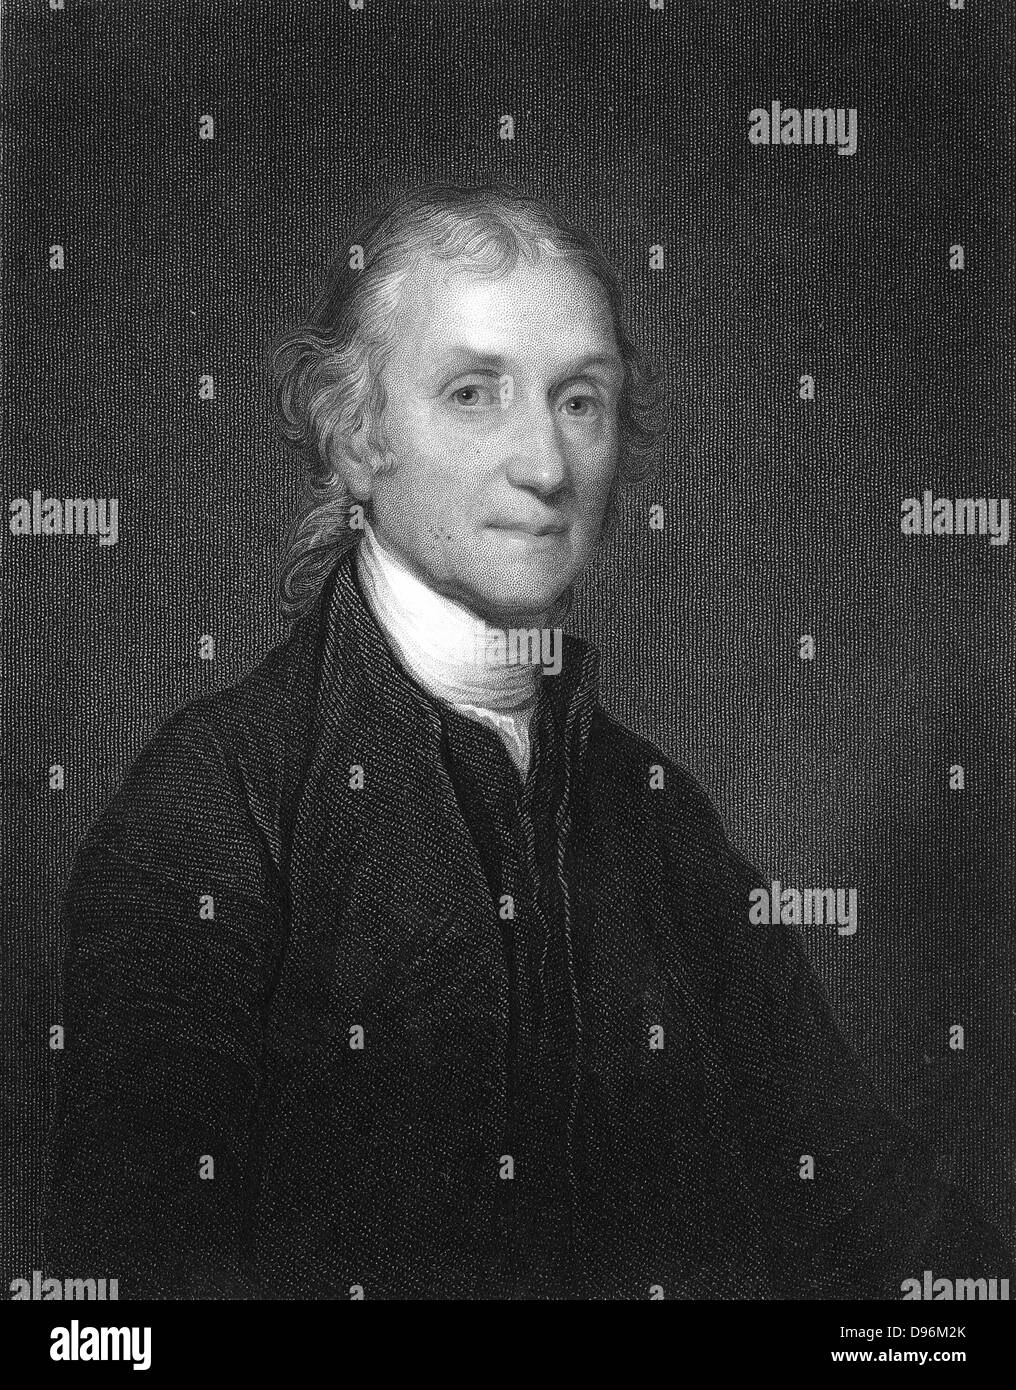 Joseph Priestley (1733-1804) englischer Chemiker und Non-Conformist Minister. Einer der Entdecker von Sauerstoff. Von Sheridan Muspratt 'Chemie', William Mackenzie, London, c 1860. Stockfoto